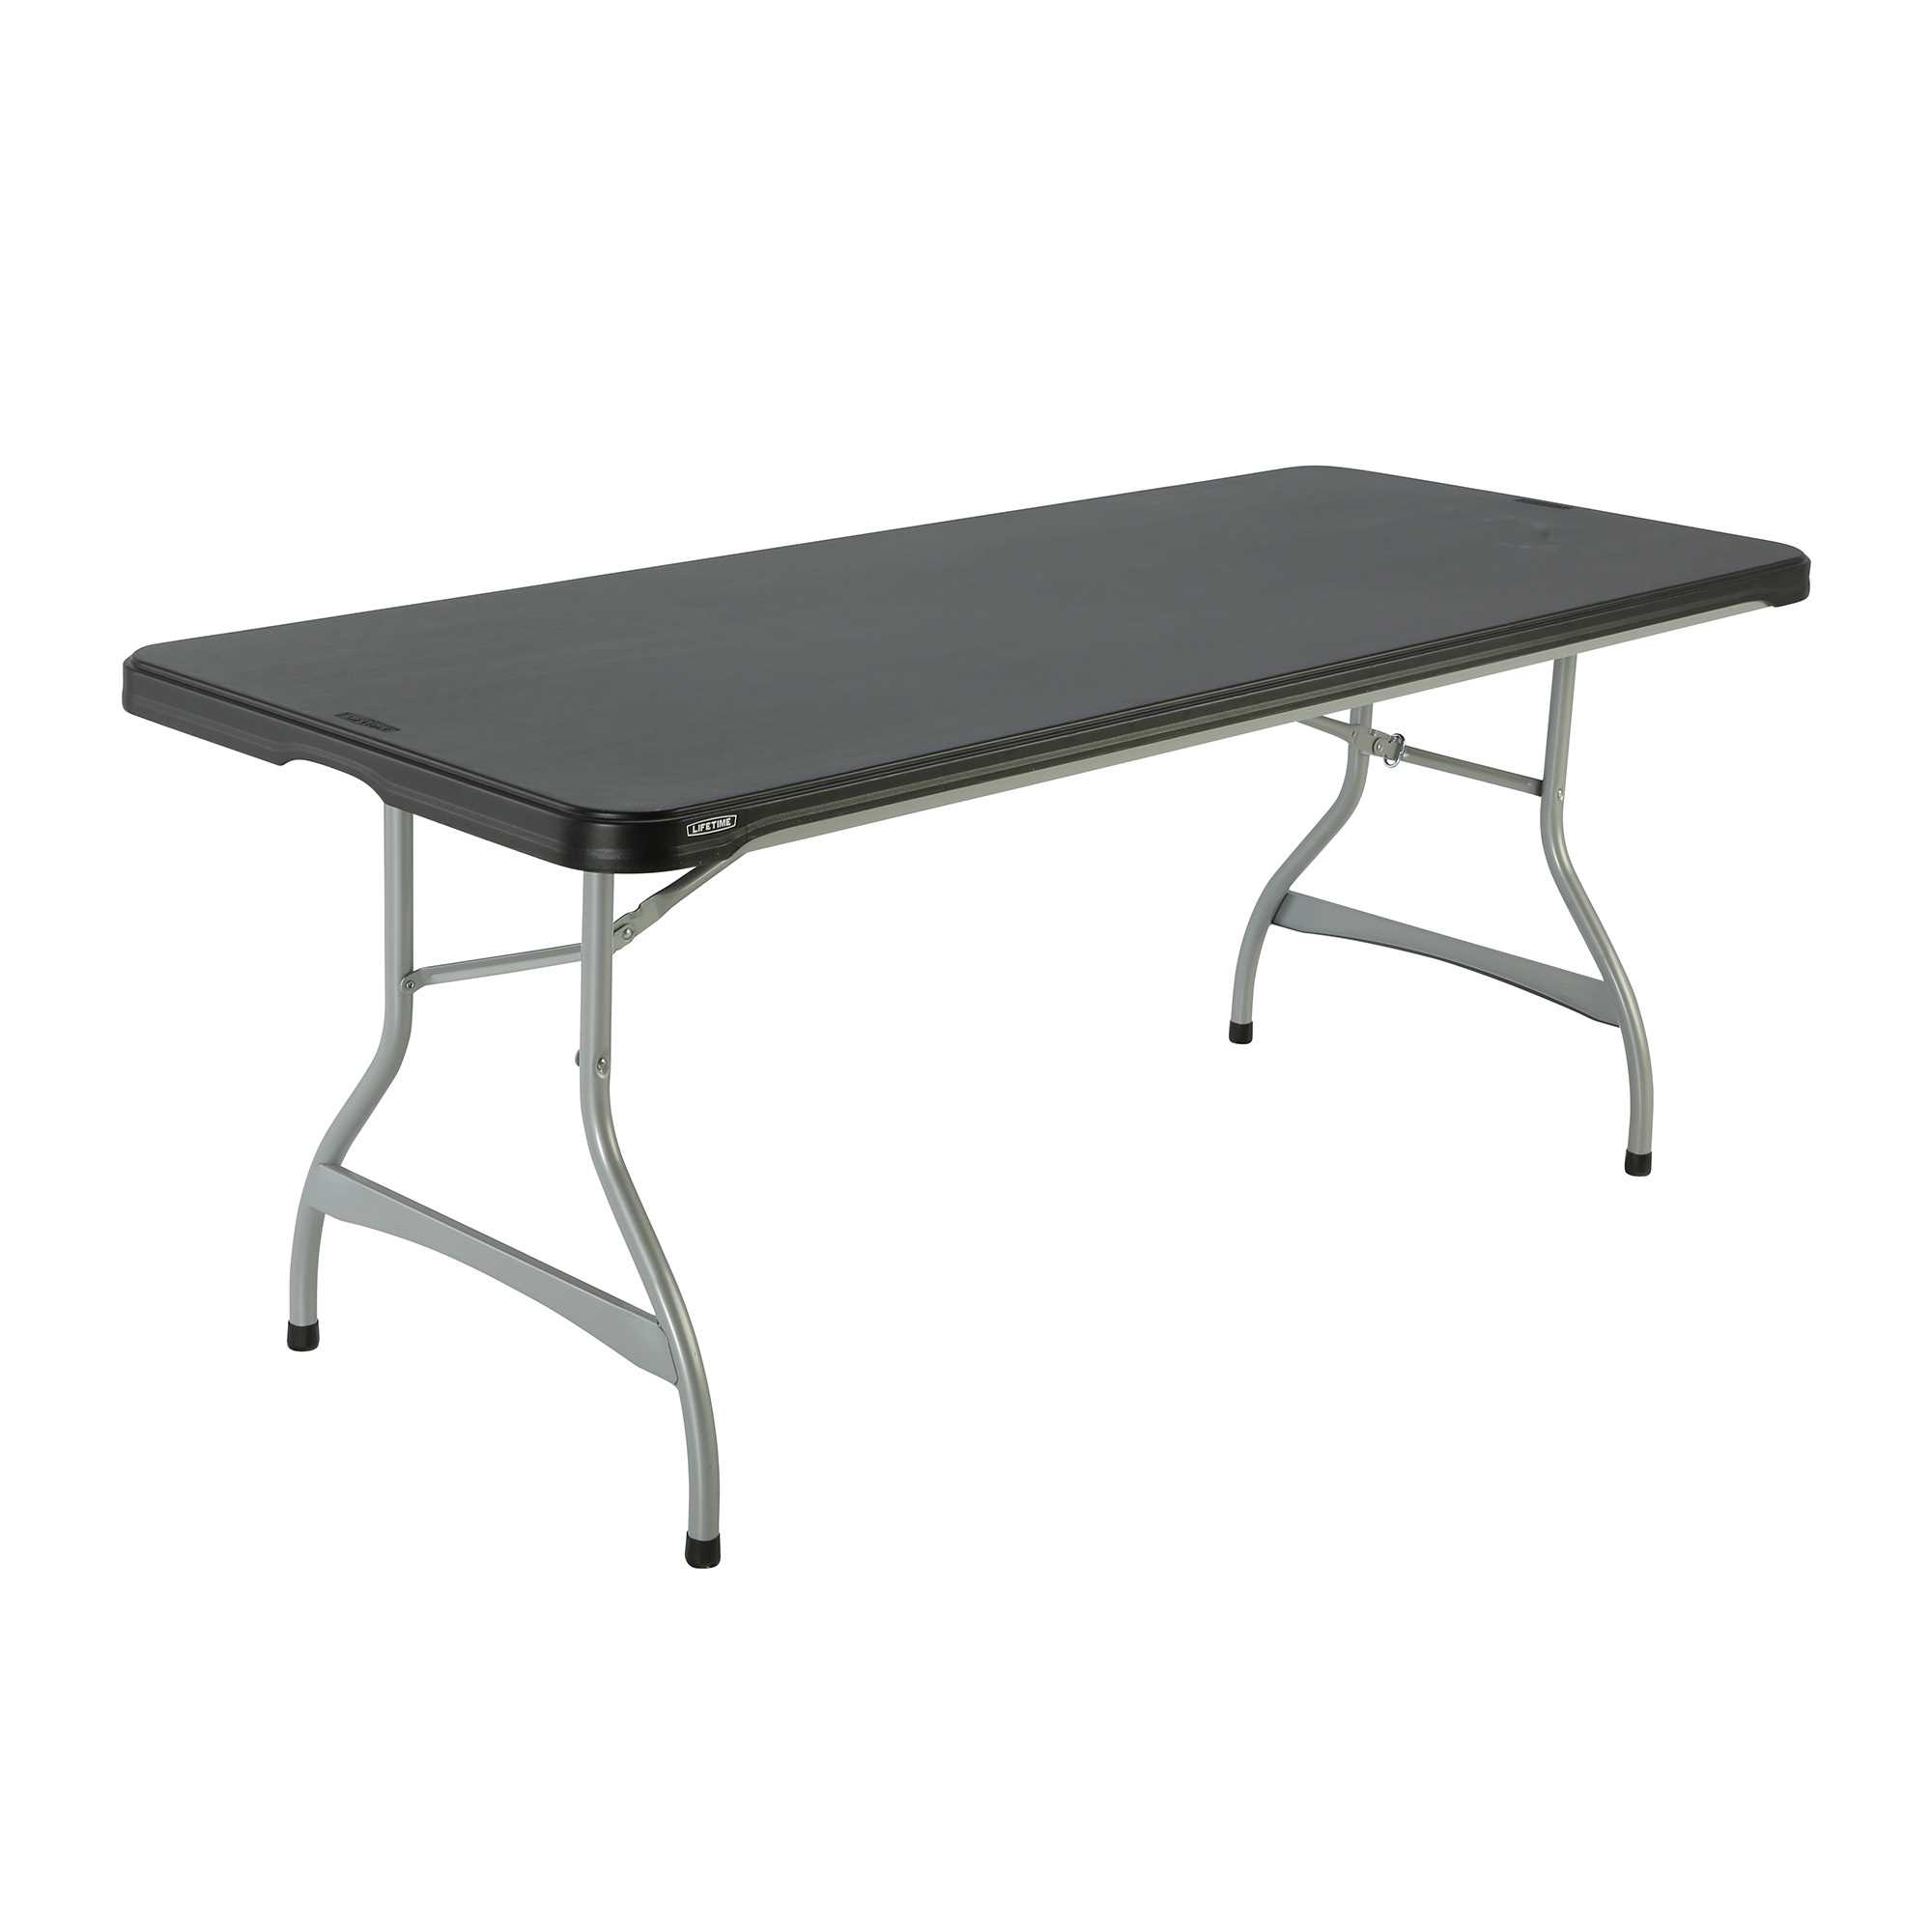 6ft Rectangular Lifetime table 183cm black